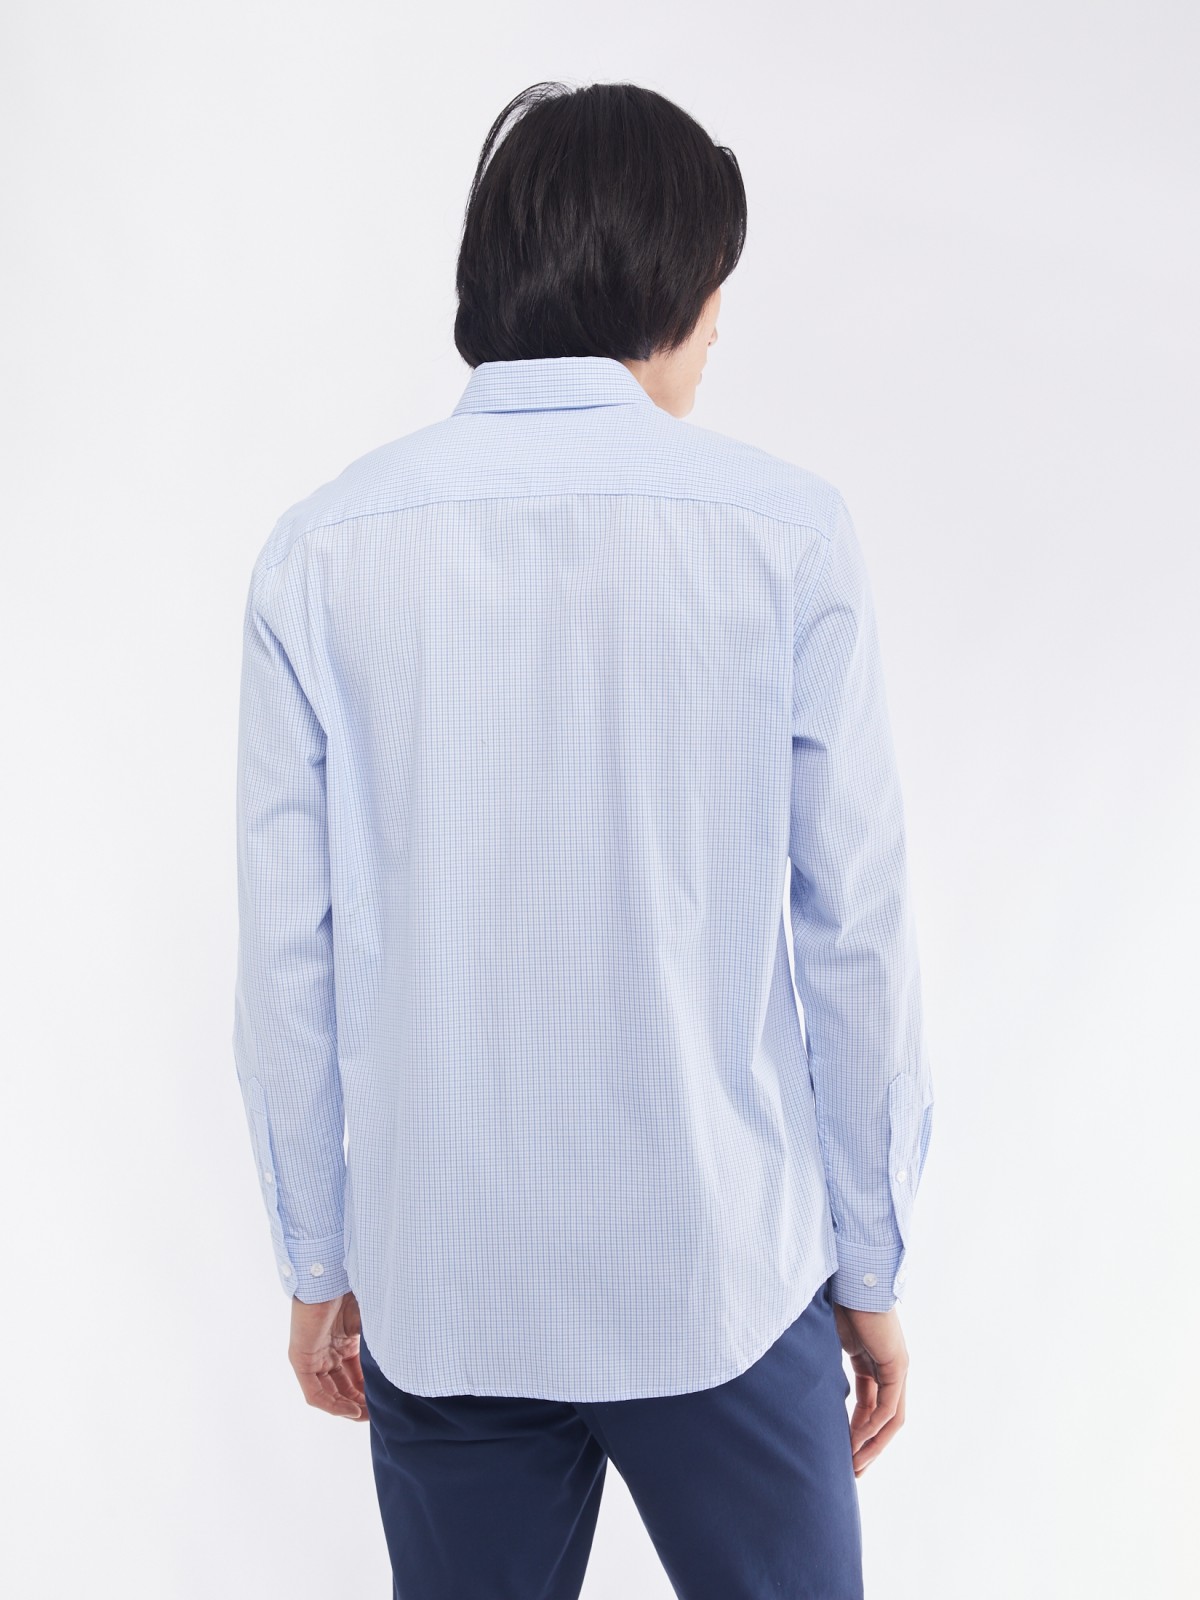 Офисная рубашка прямого силуэта с узором в клетку zolla 014112159062, цвет светло-голубой, размер M - фото 6